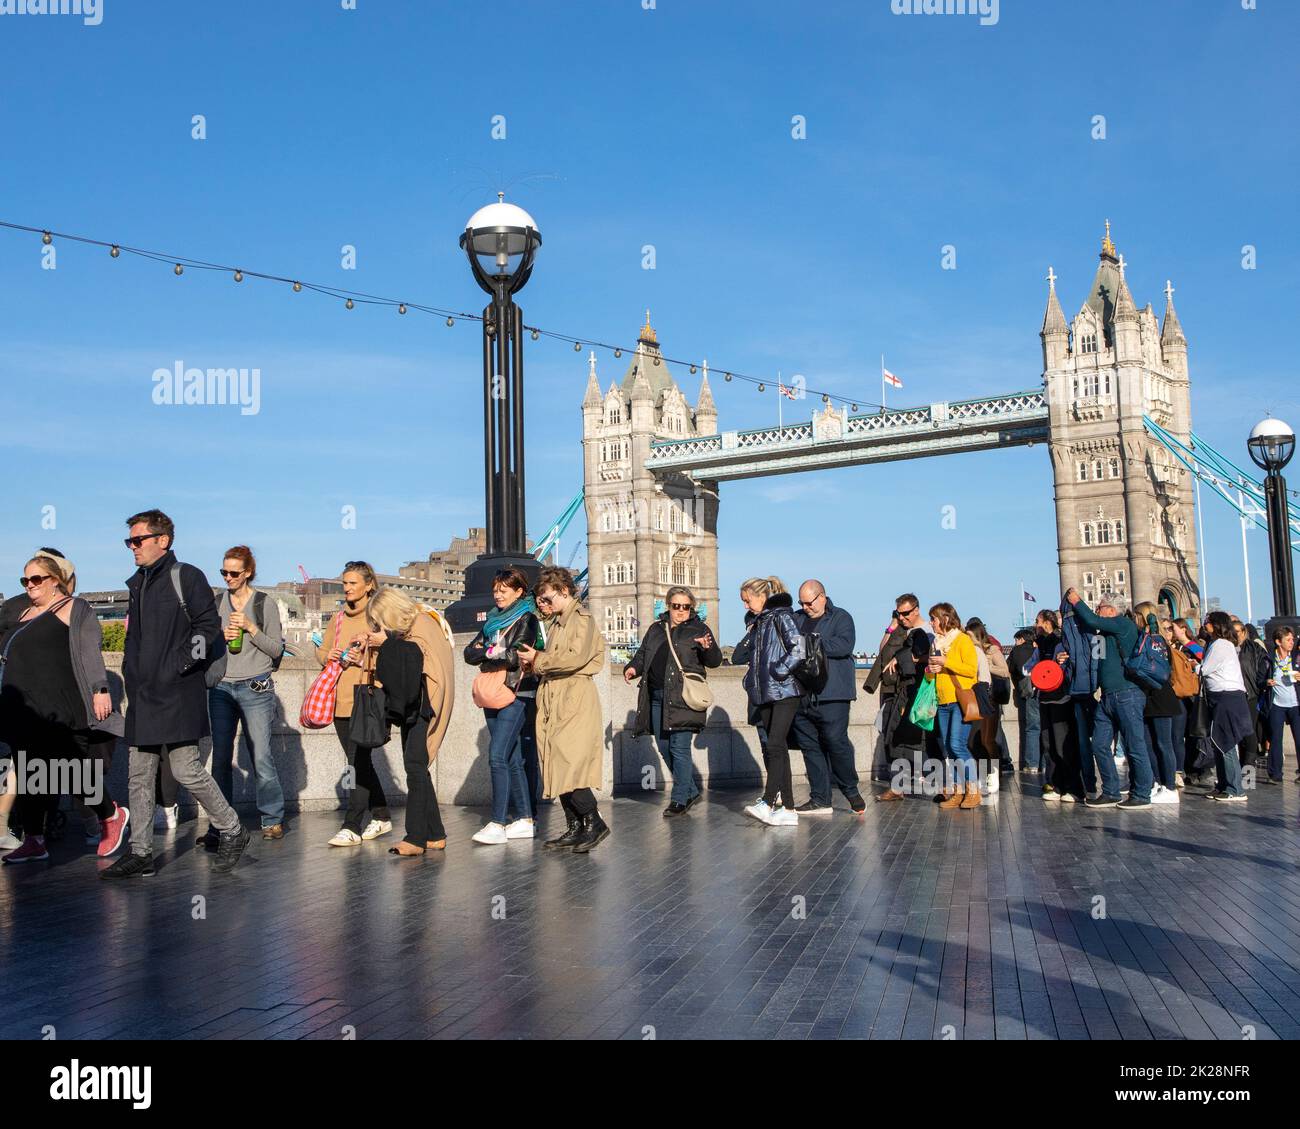 Londres, Royaume-Uni - September17th 2022 : la file d'attente dans l'État pour voir la reine Elizabeth II, en passant par le légendaire Tower Bridge à Londres, Royaume-Uni. Banque D'Images